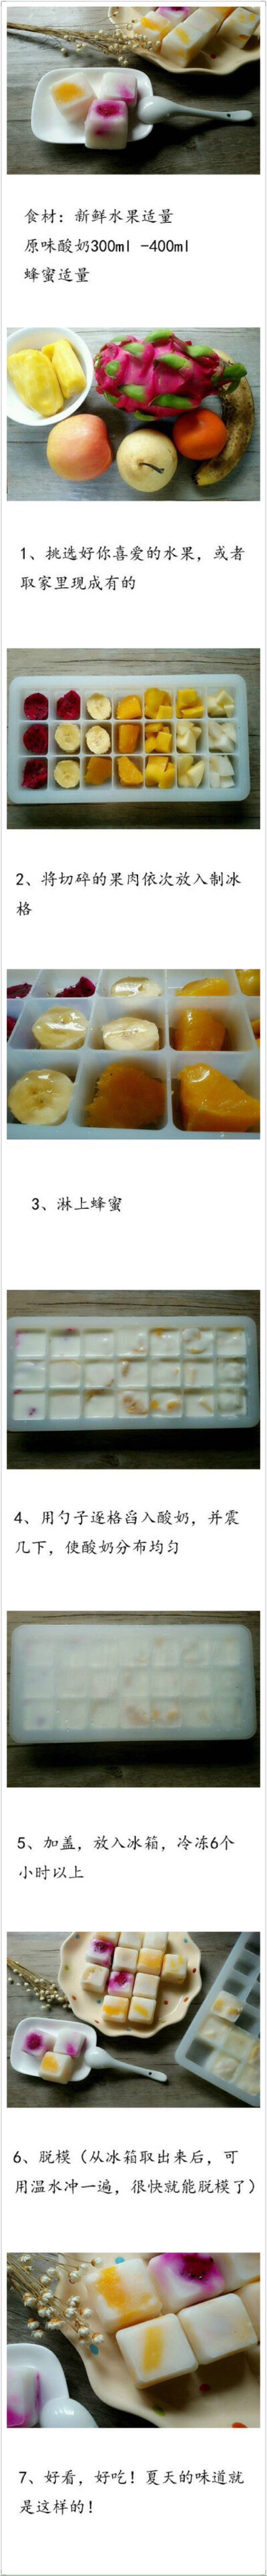 【水果酸奶冰】